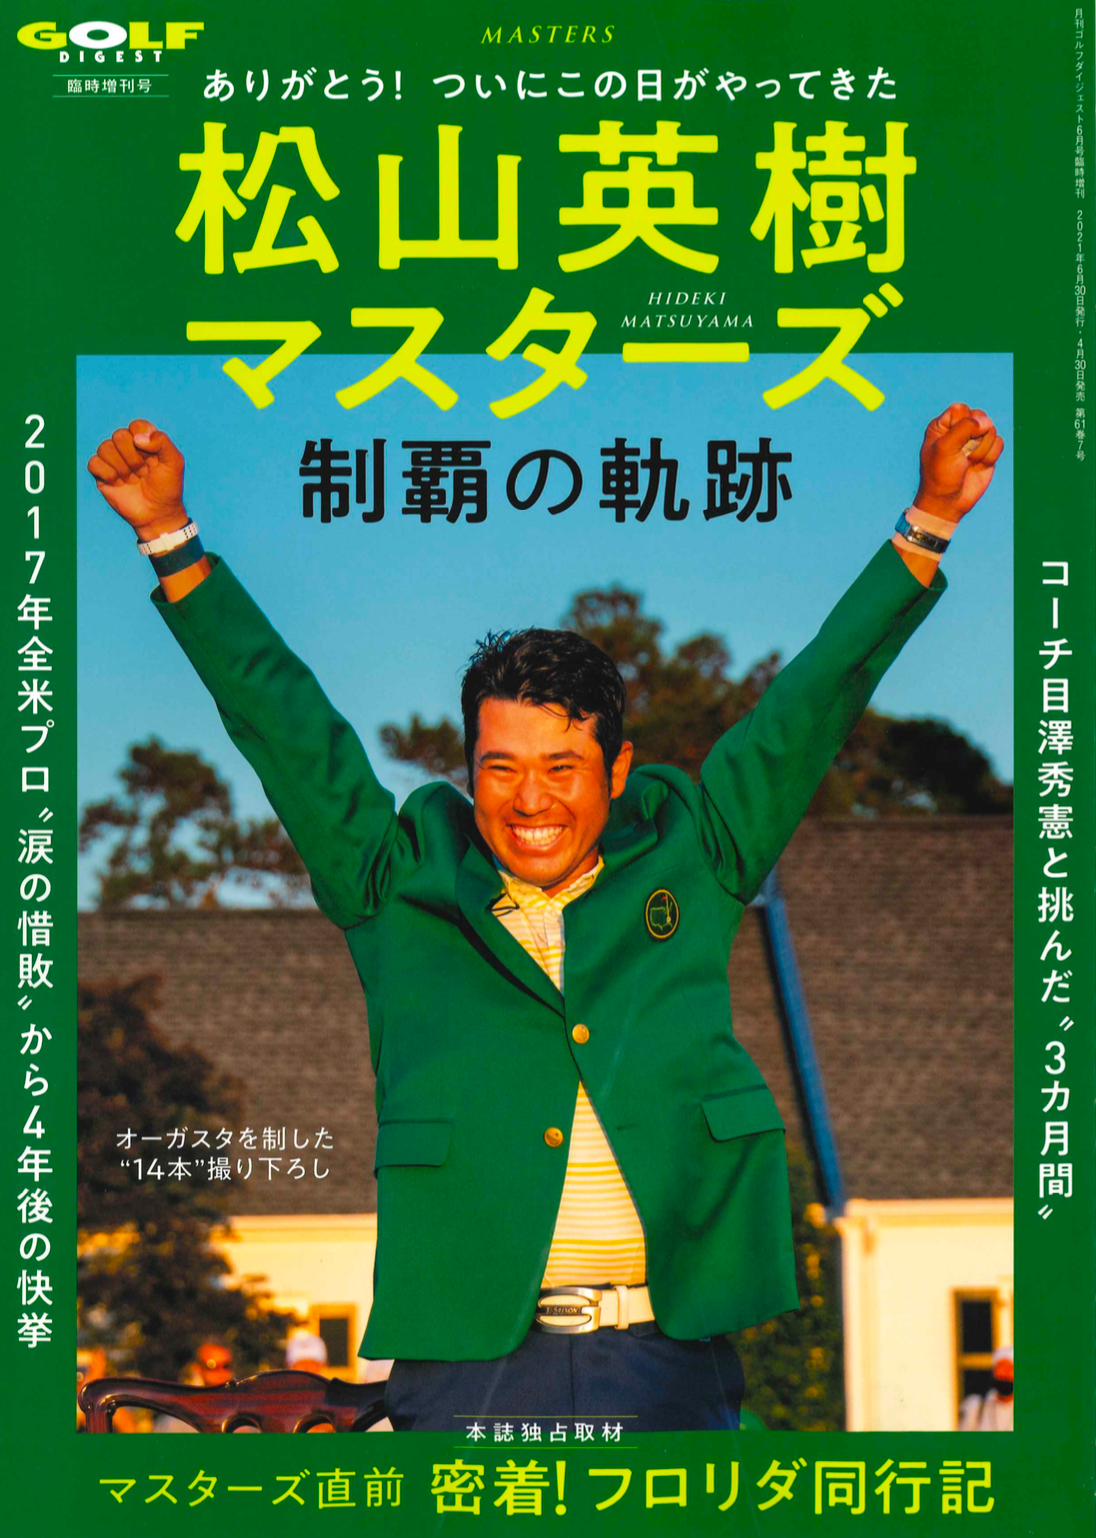 Hideki Matsuyama auf dem Cover der Golf Digest (Japan)